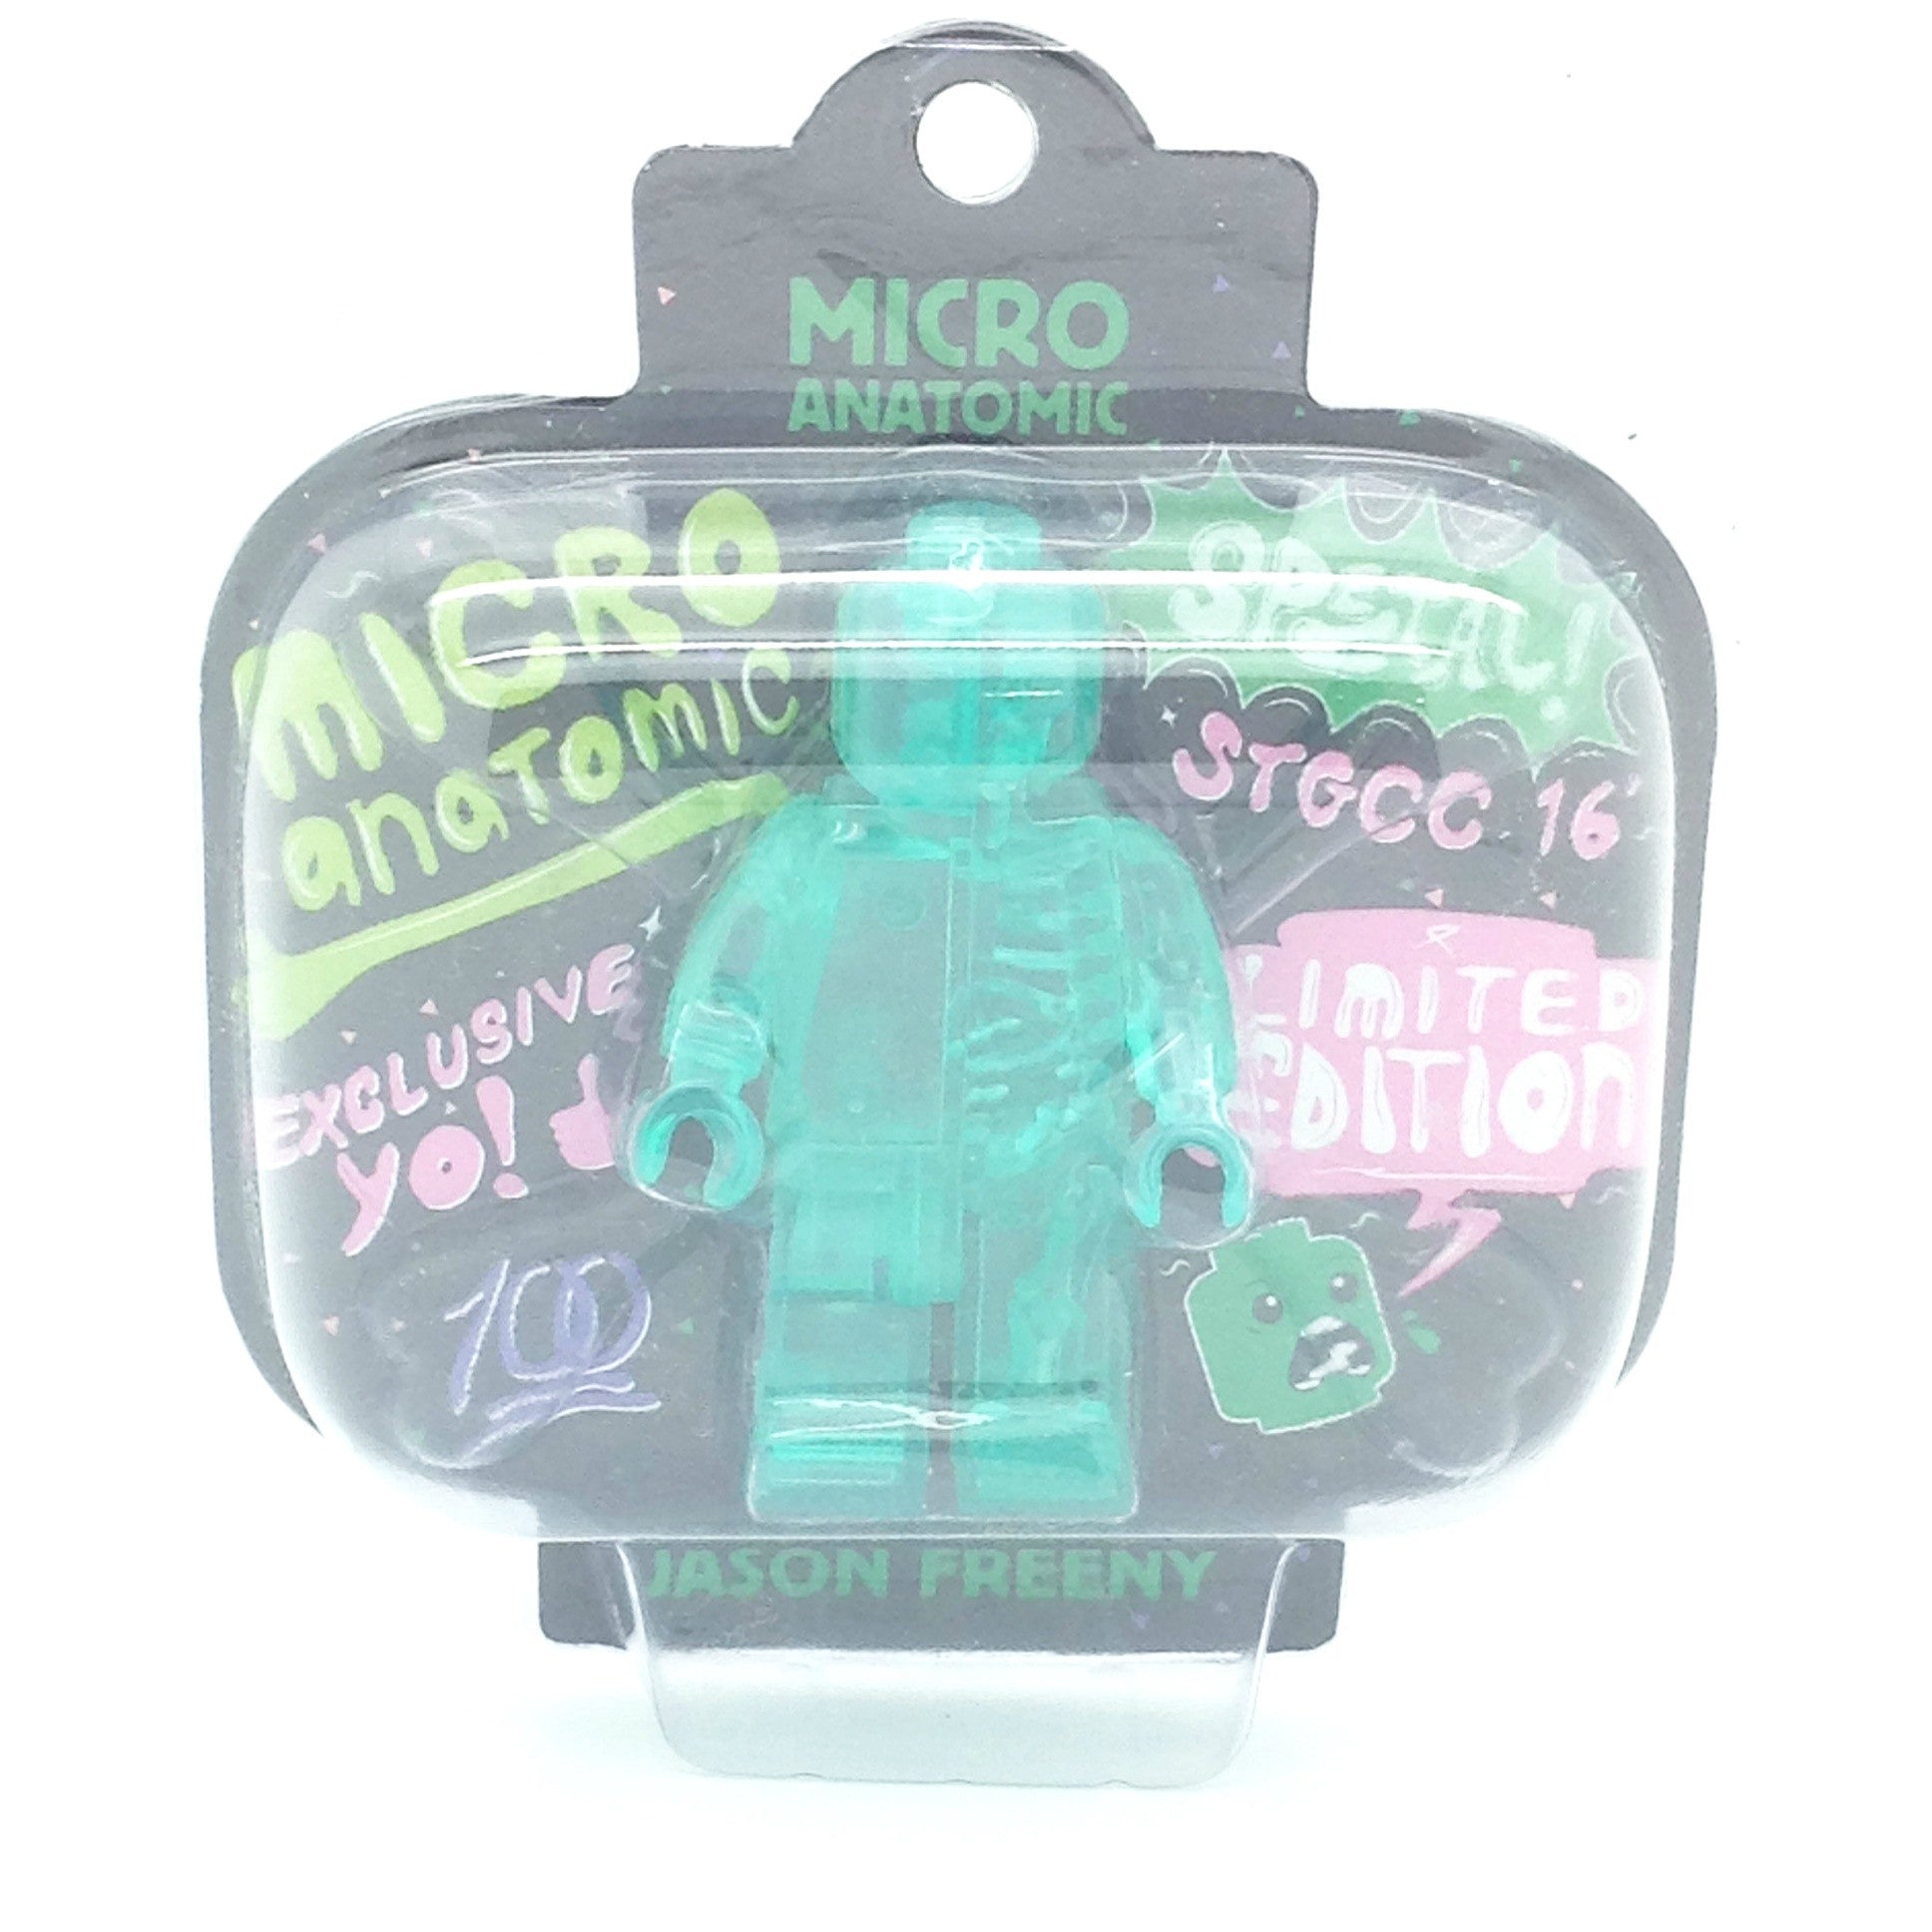 Micro Anatomic Green Figure by Jason Freeny STGCC 2106 Edition